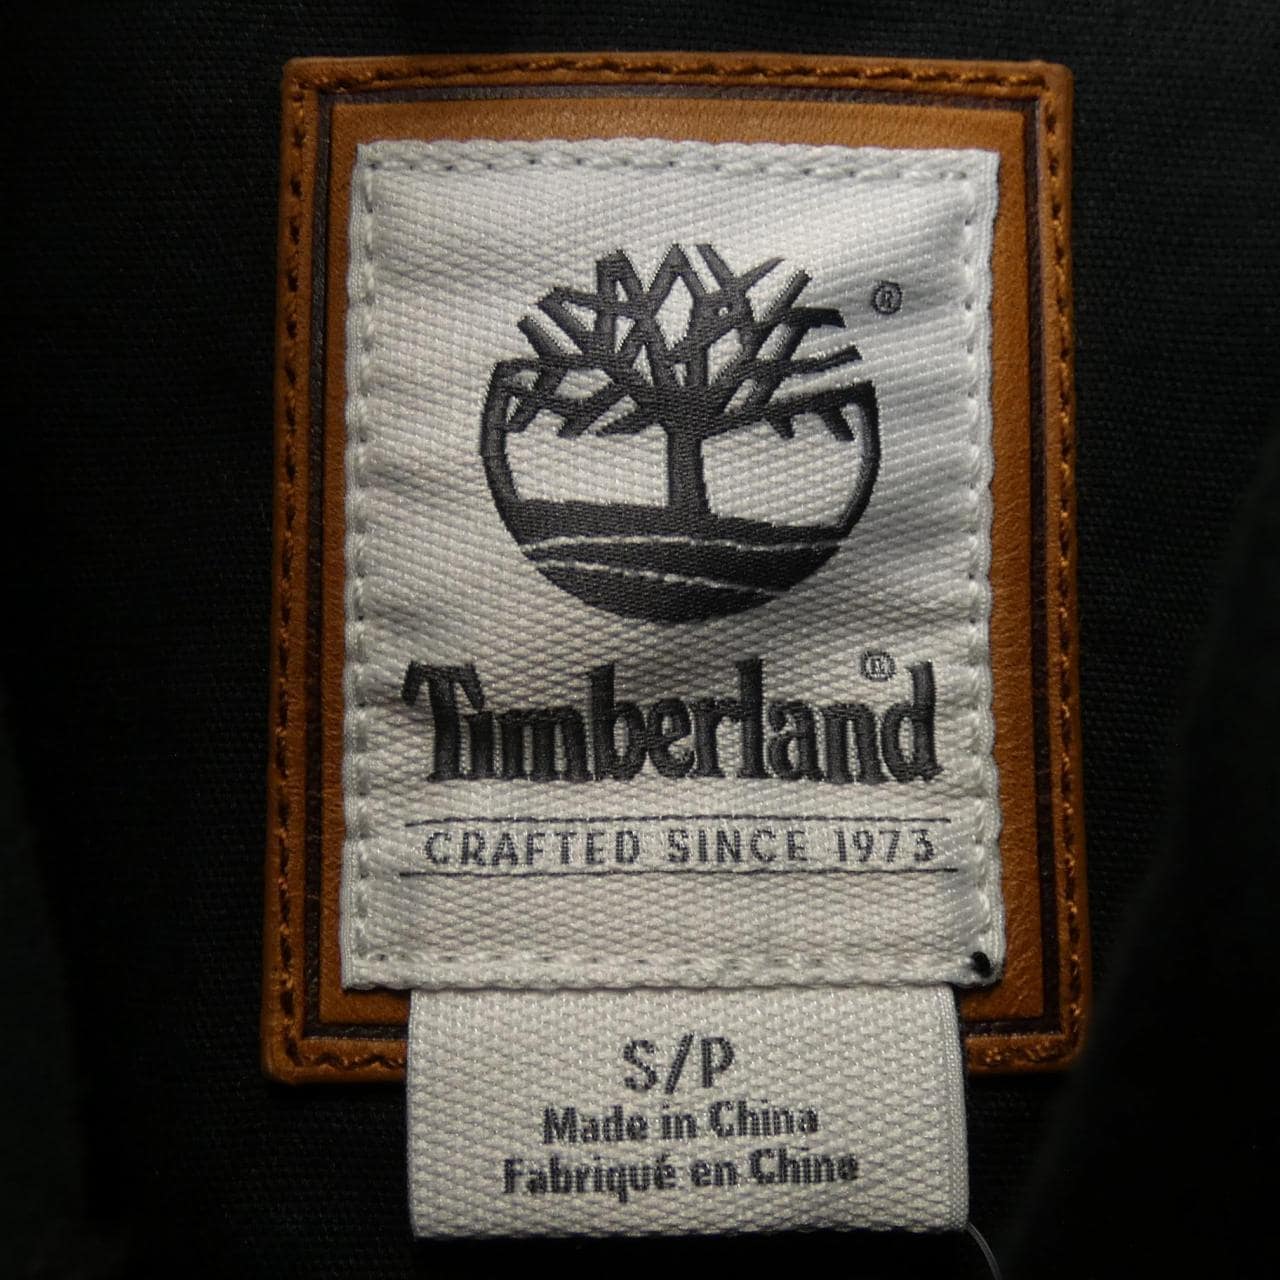 Timberland TIMBERLAND夹克衫